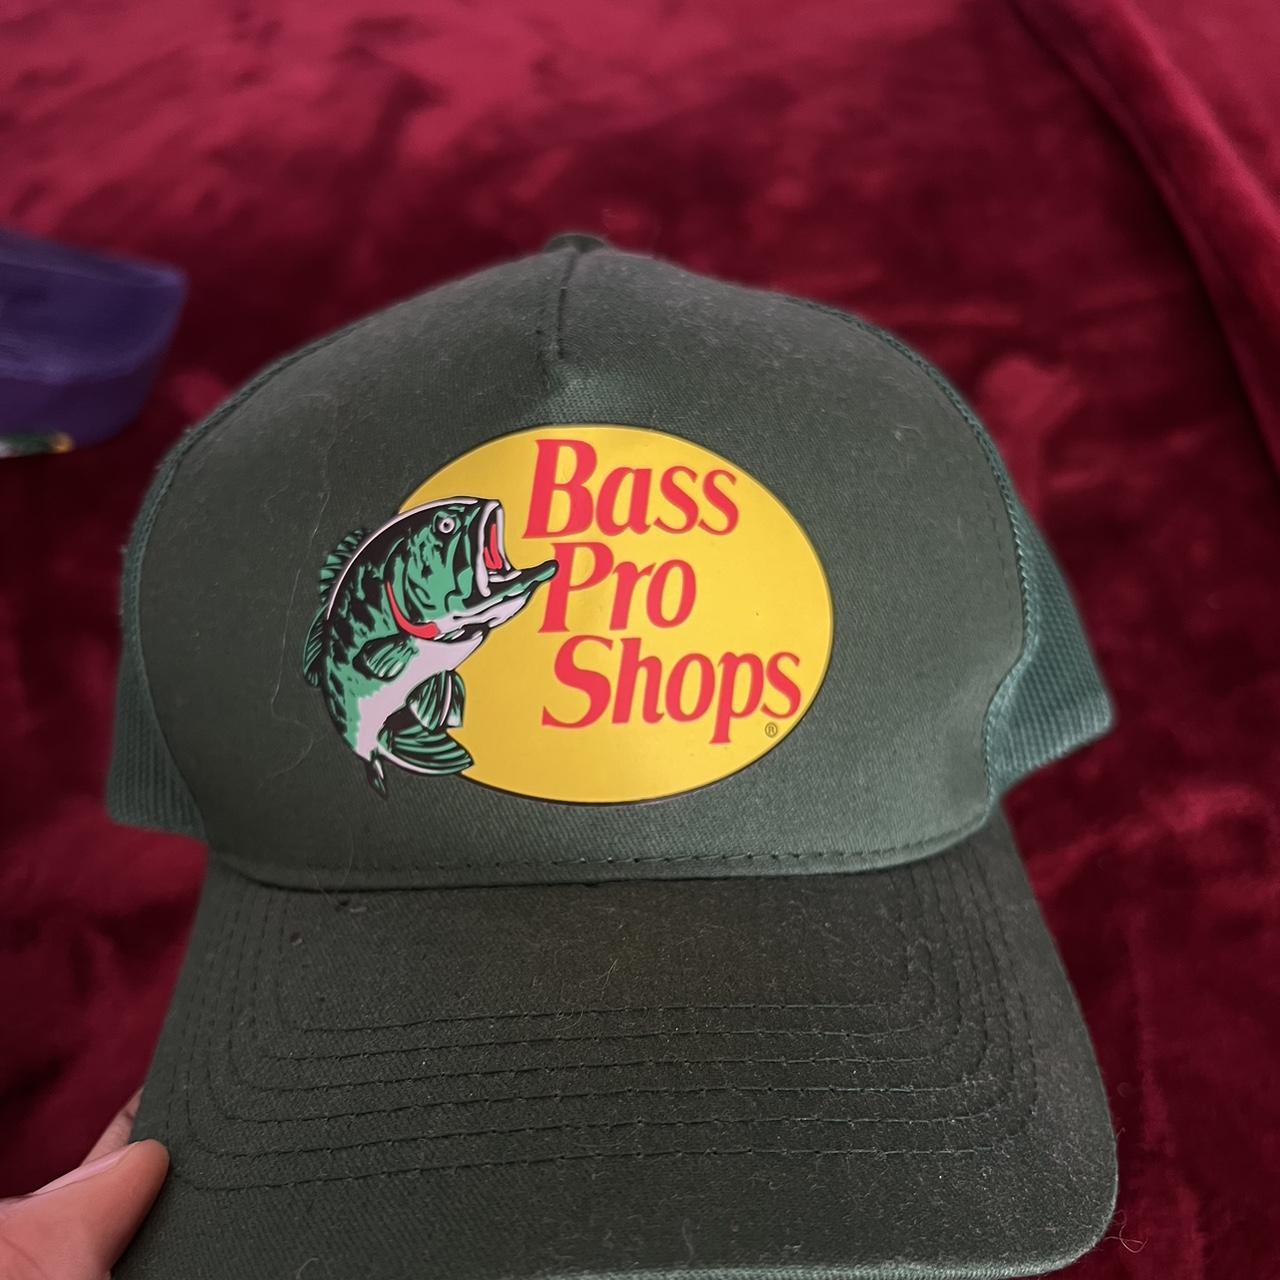 Bass Pro Shops Men's Caps - Green